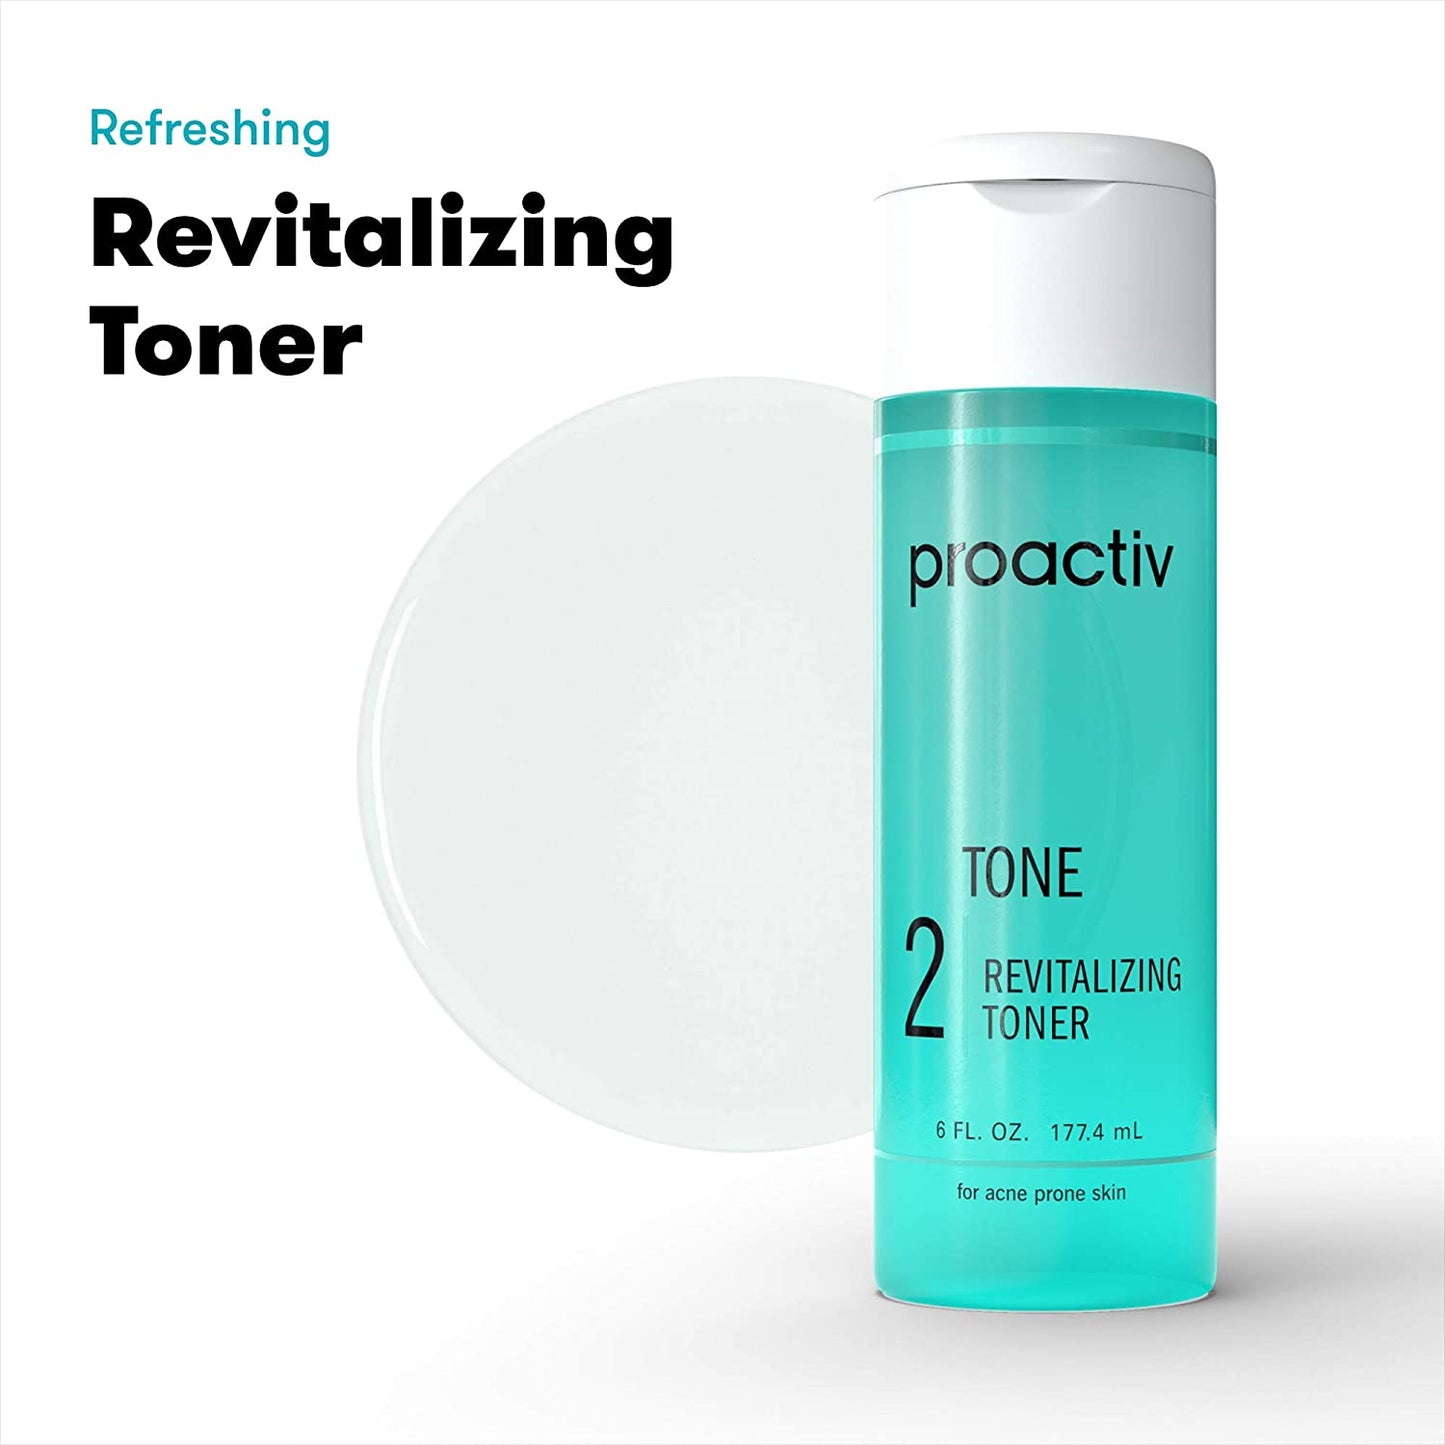 Proactiv 2 Tone Revitalizing Toner Glycolic Acid and Witch Hazel Formula for Acne Prone Skin, 6 fl.oz / 177.4 ml